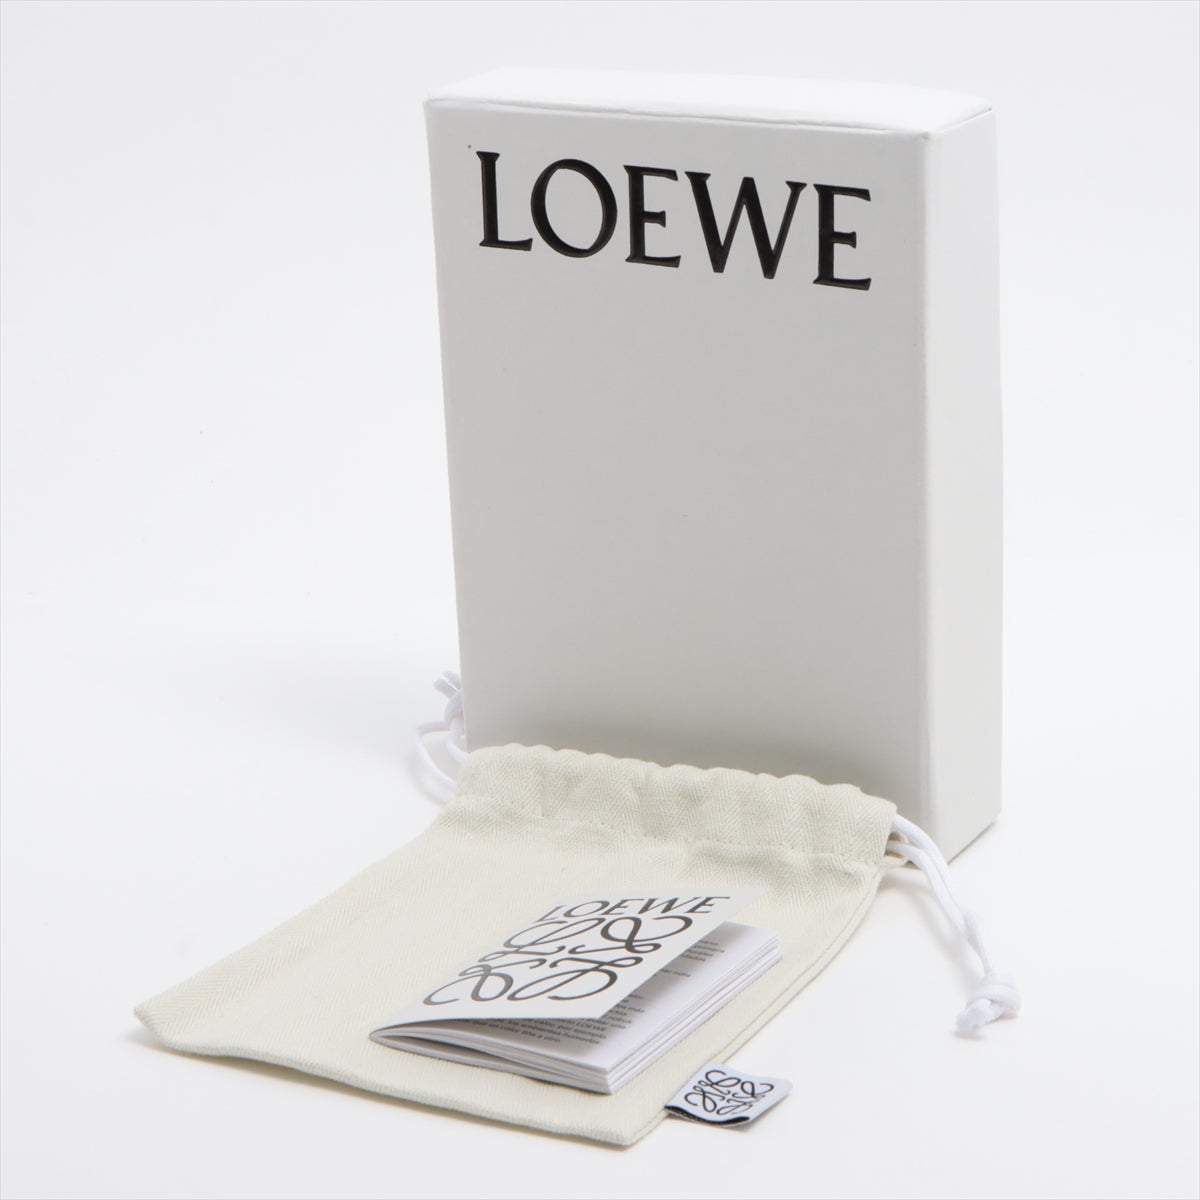 Loewe Leather Coincase Brown Pepper